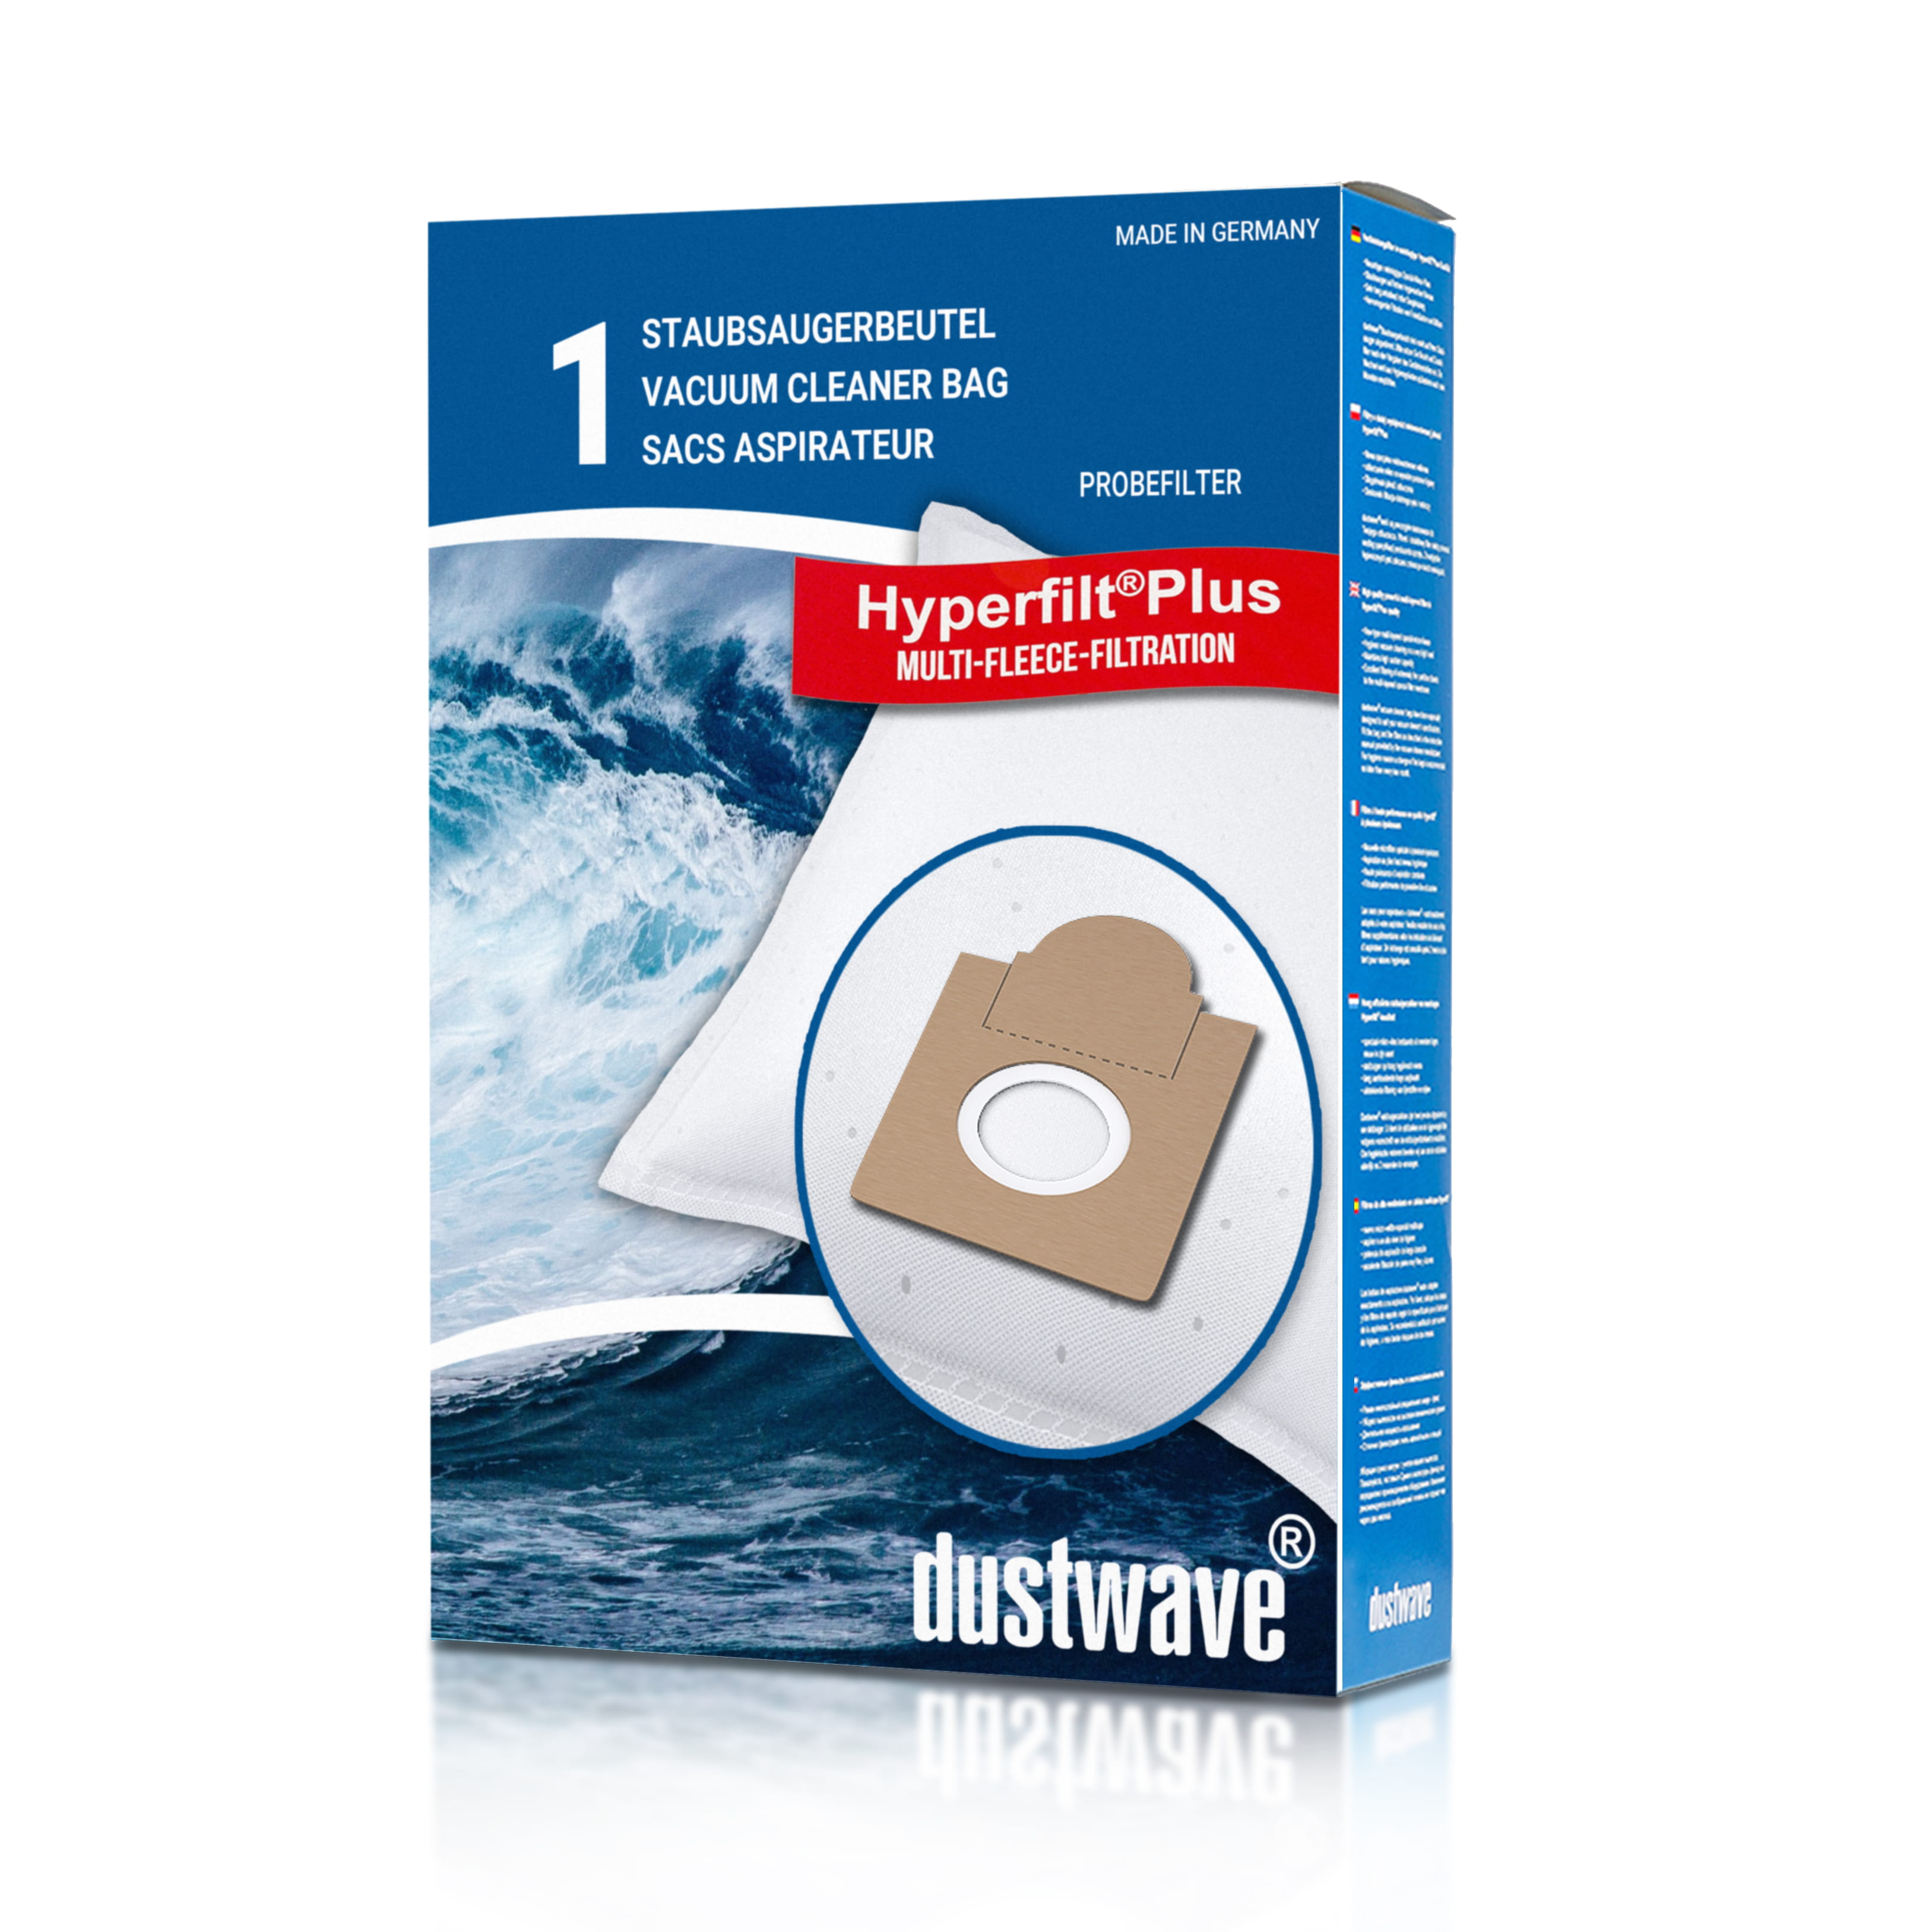 Dustwave® 1 Staubsaugerbeutel für Ariete Aspirium 2382 - hocheffizient, mehrlagiges Mikrovlies mit Hygieneverschluss - Made in Germany